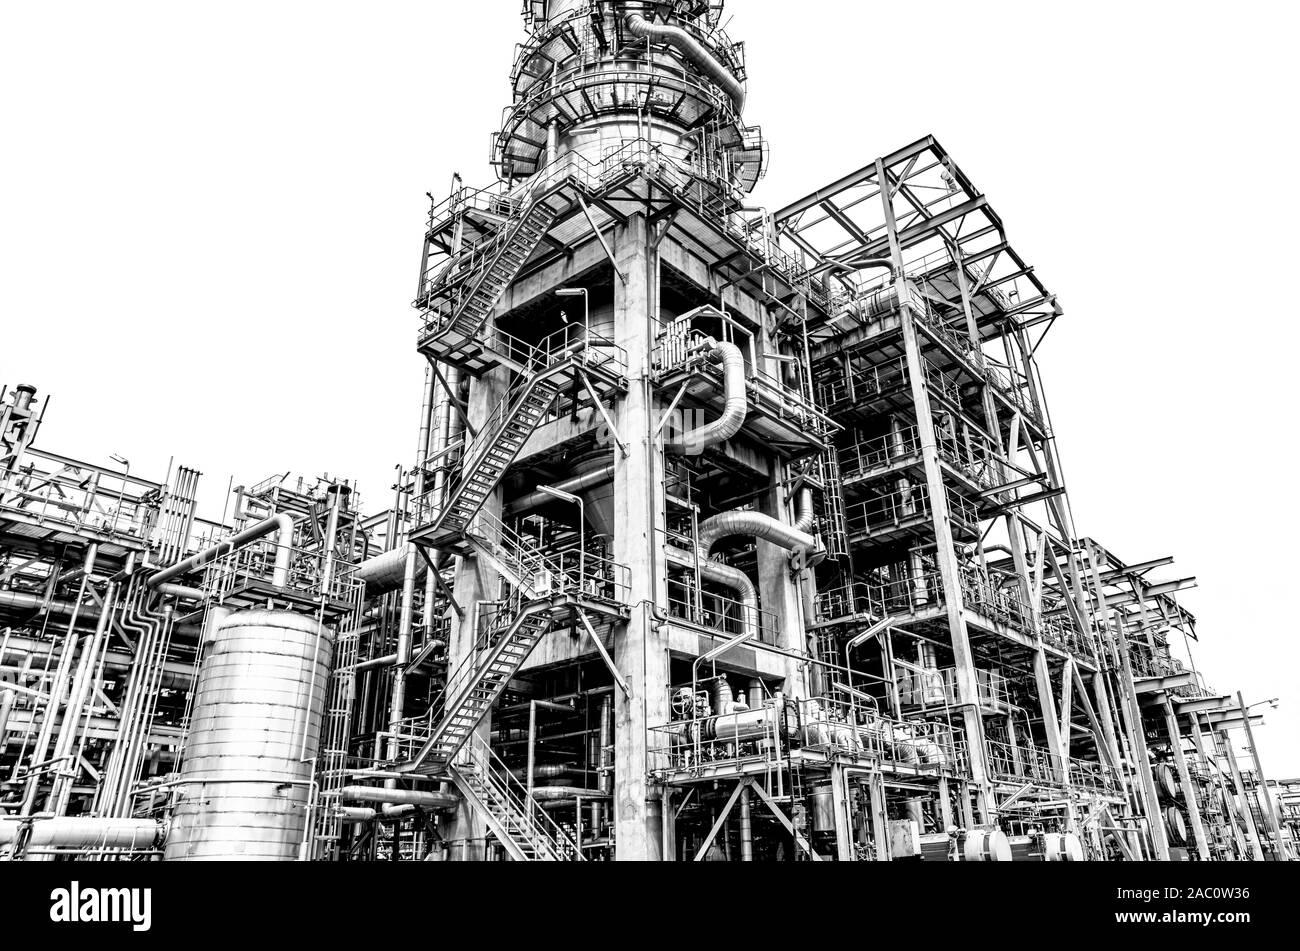 Öl- und Gasindustrie, Raffinerien, petrochemische Anlage Bereich auf weißen Hintergrund. Stockfoto